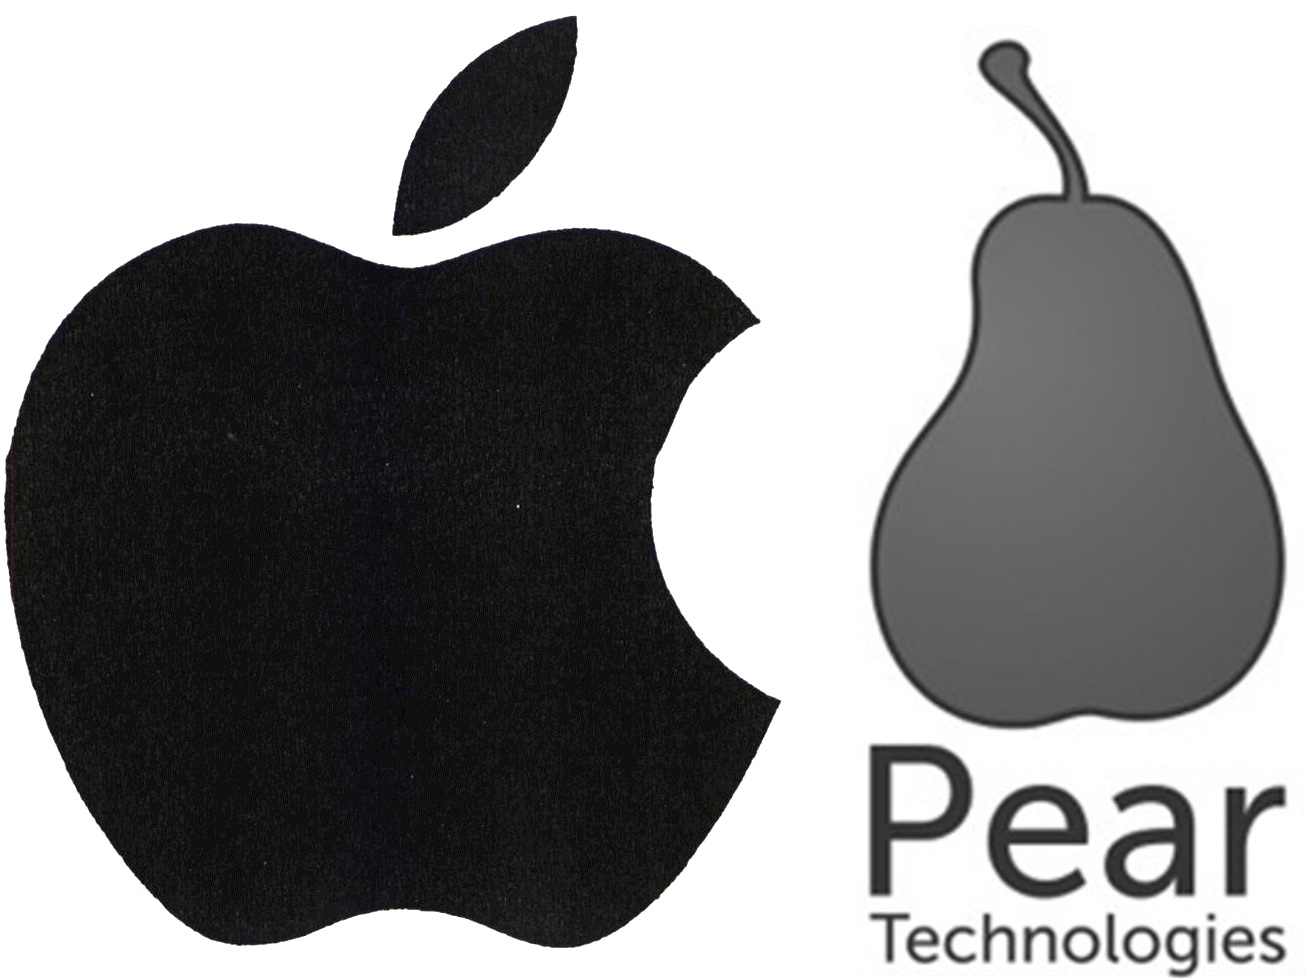 Apple gewinnt Rechtsstreit mit Pear Technologies - Bild 1